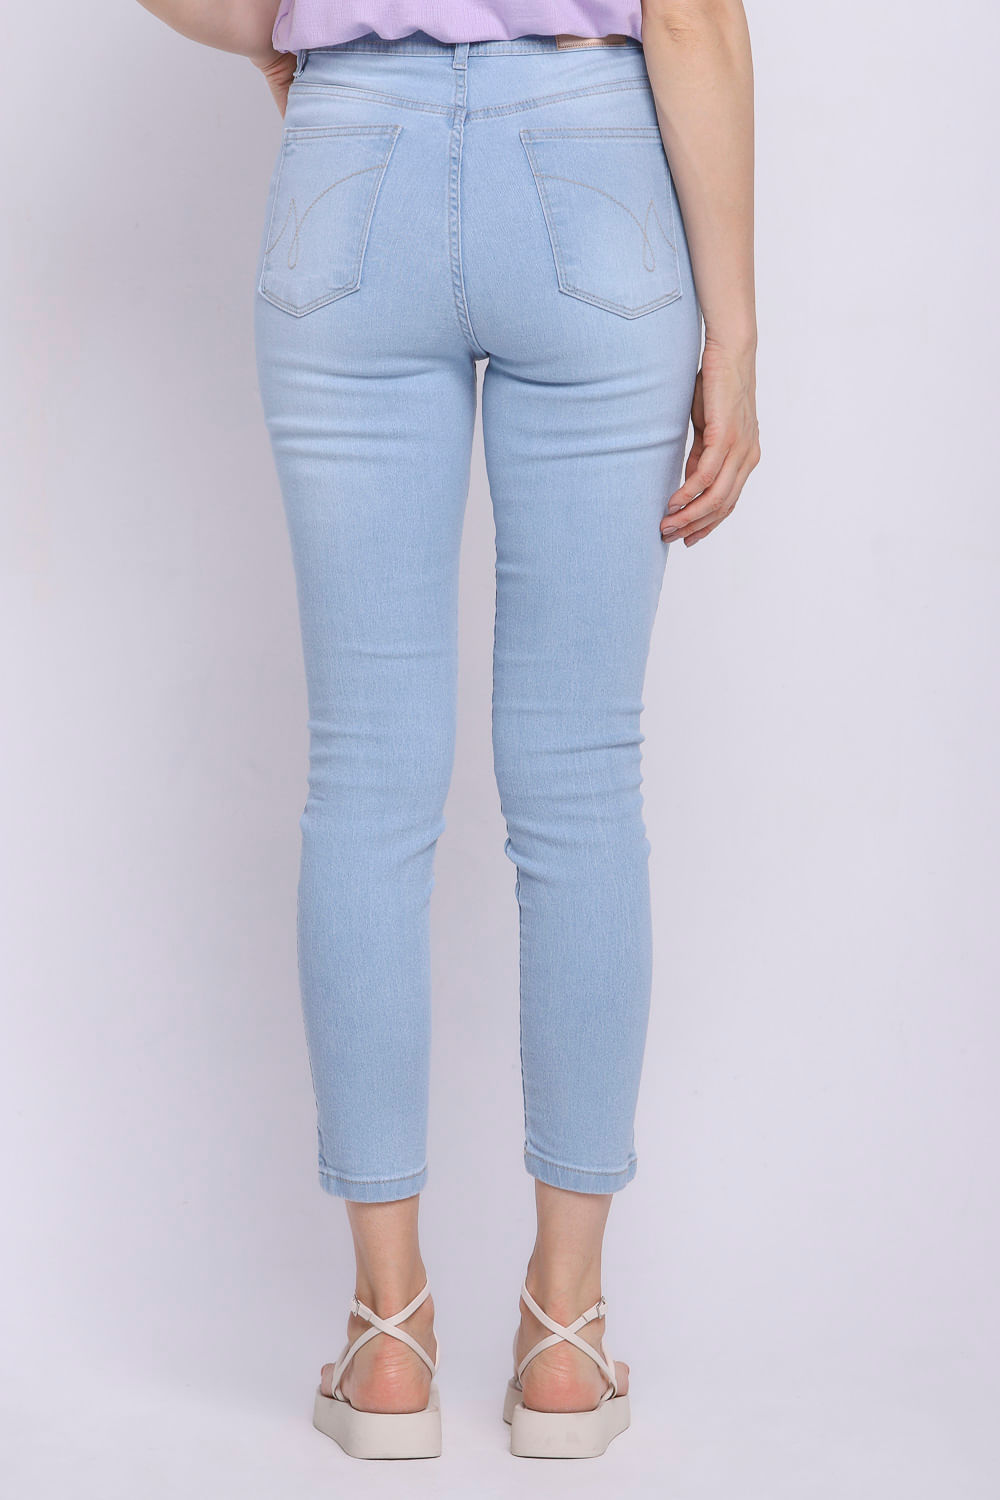 Top Jeans Feminino Alcinha Com Strass Estonado Azul